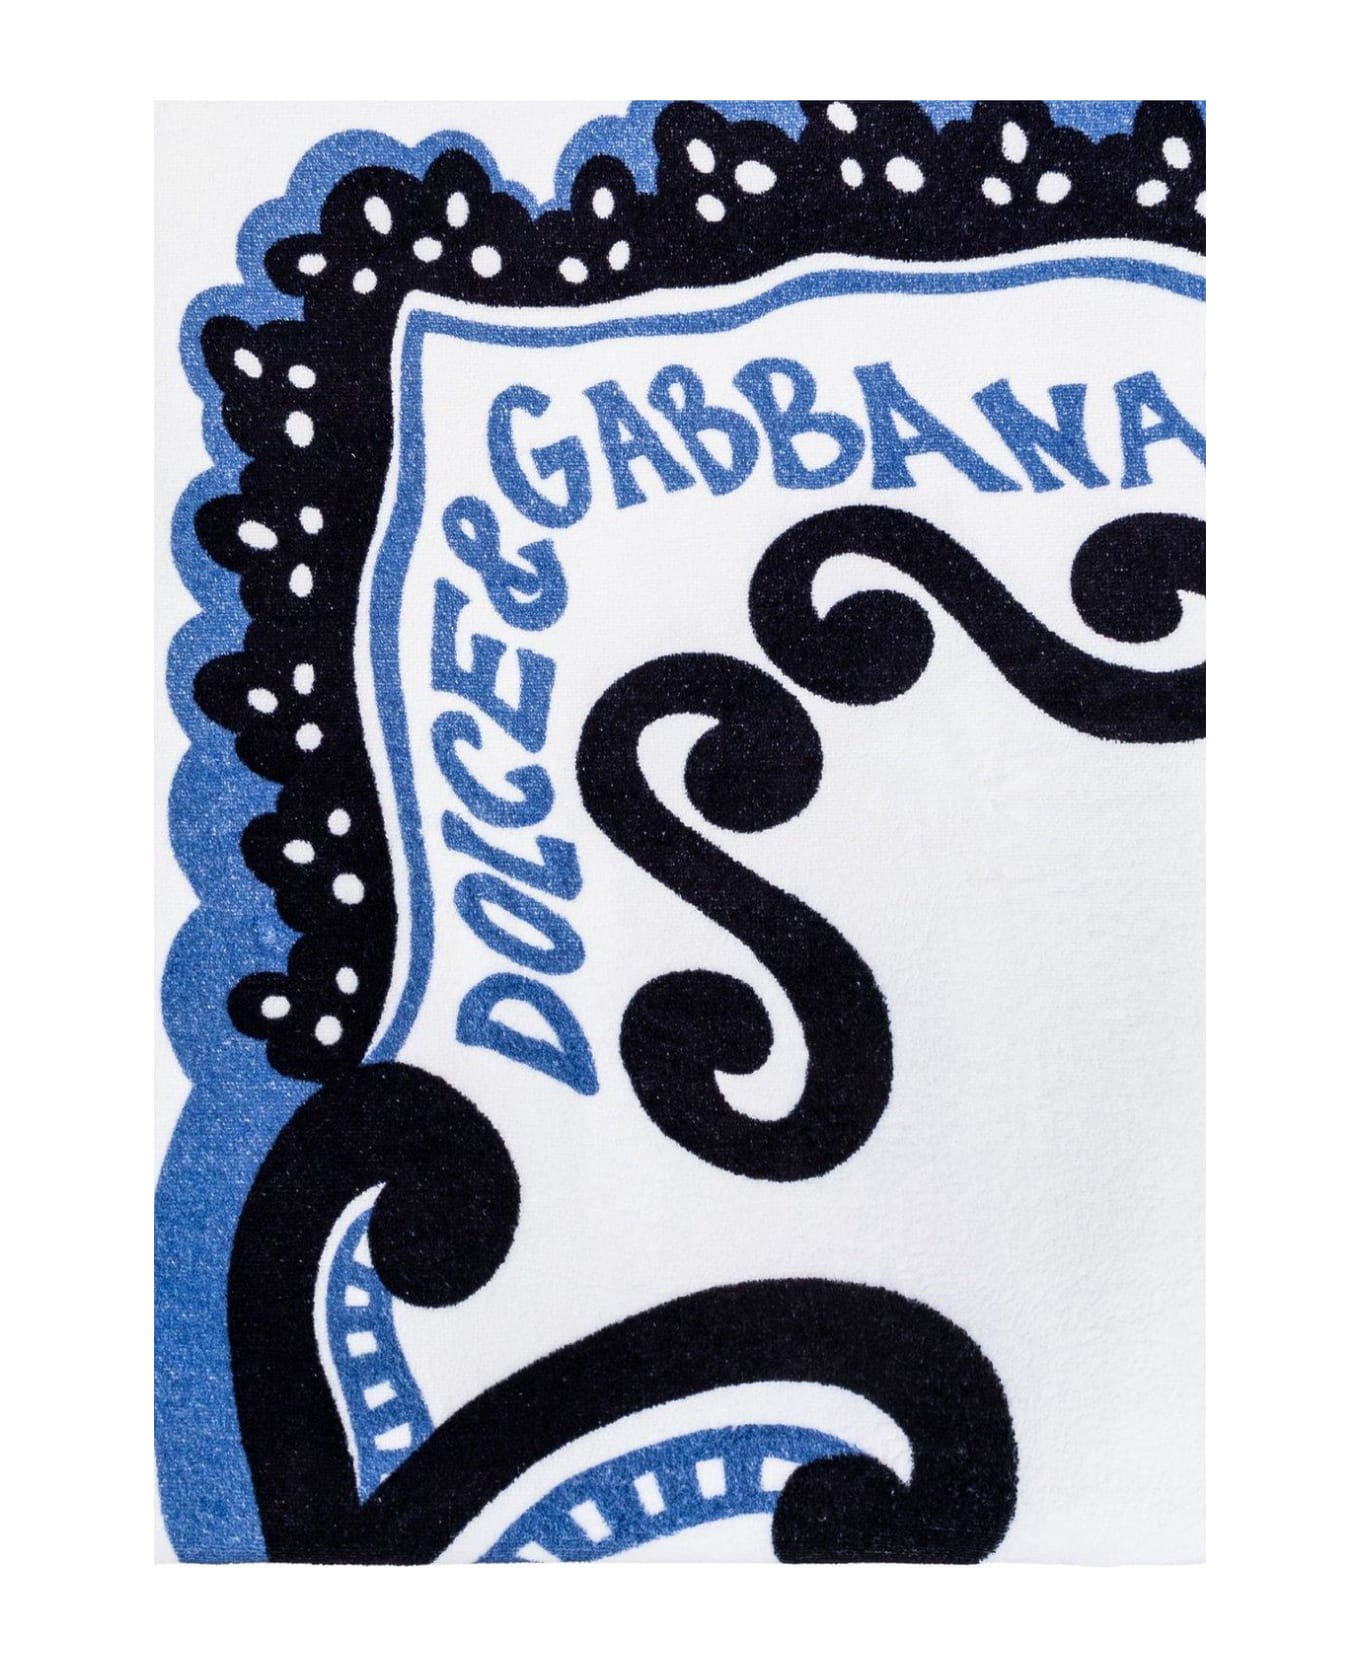 Dolce & Gabbana Beach Towel - Azzurro multicolor